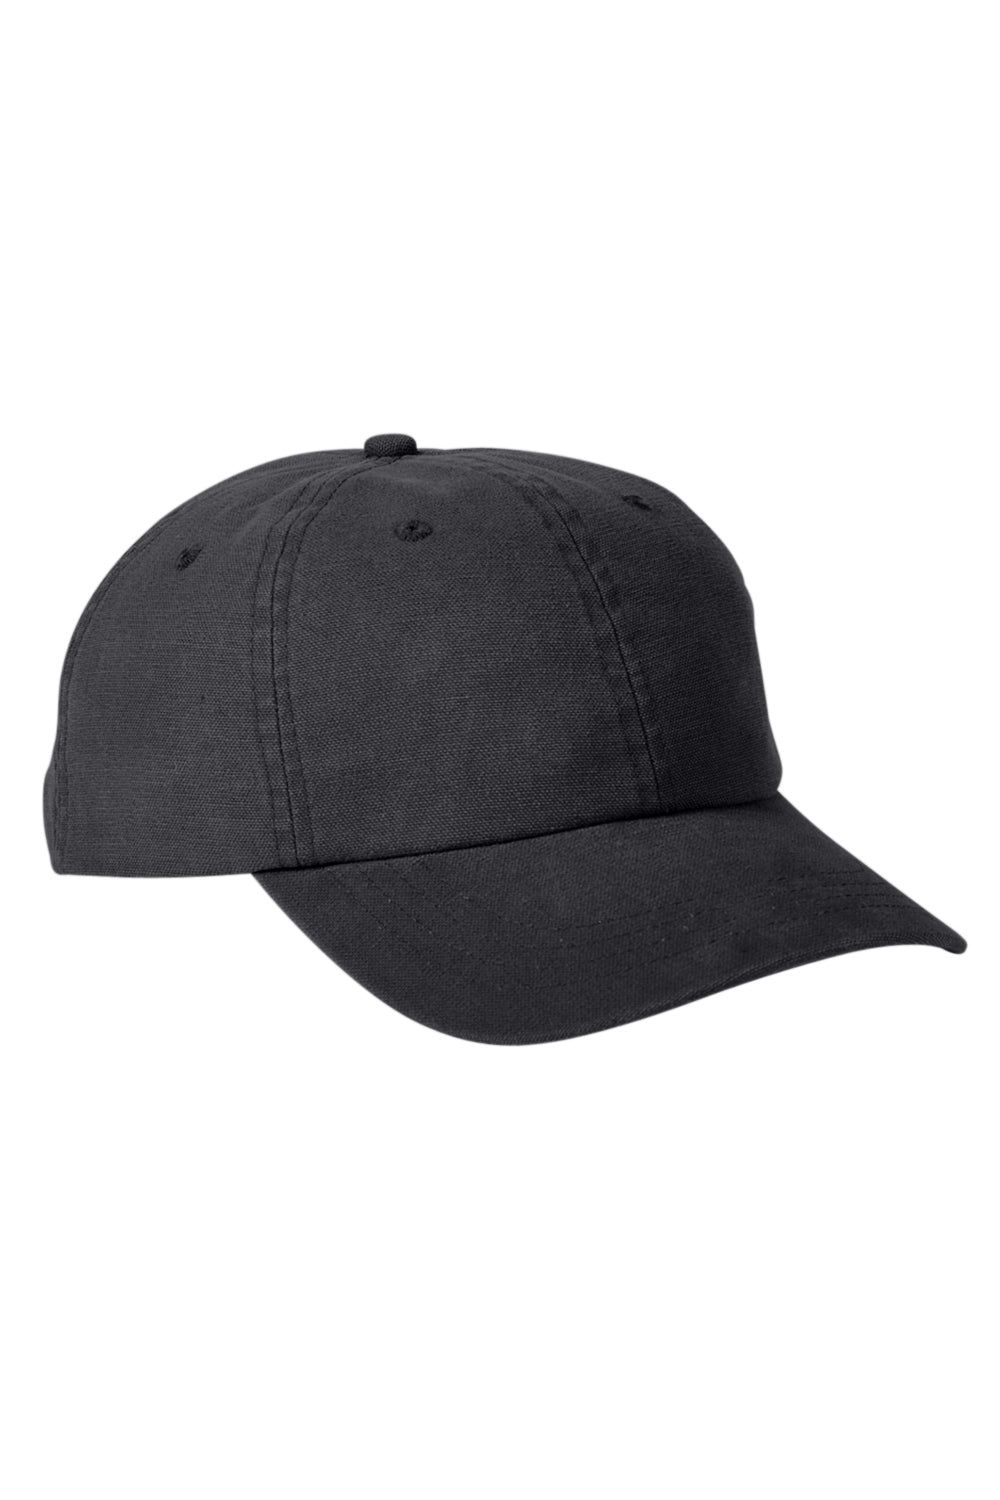 Big Accessories BA610 Mens Adjustable Hat Black Flat Front